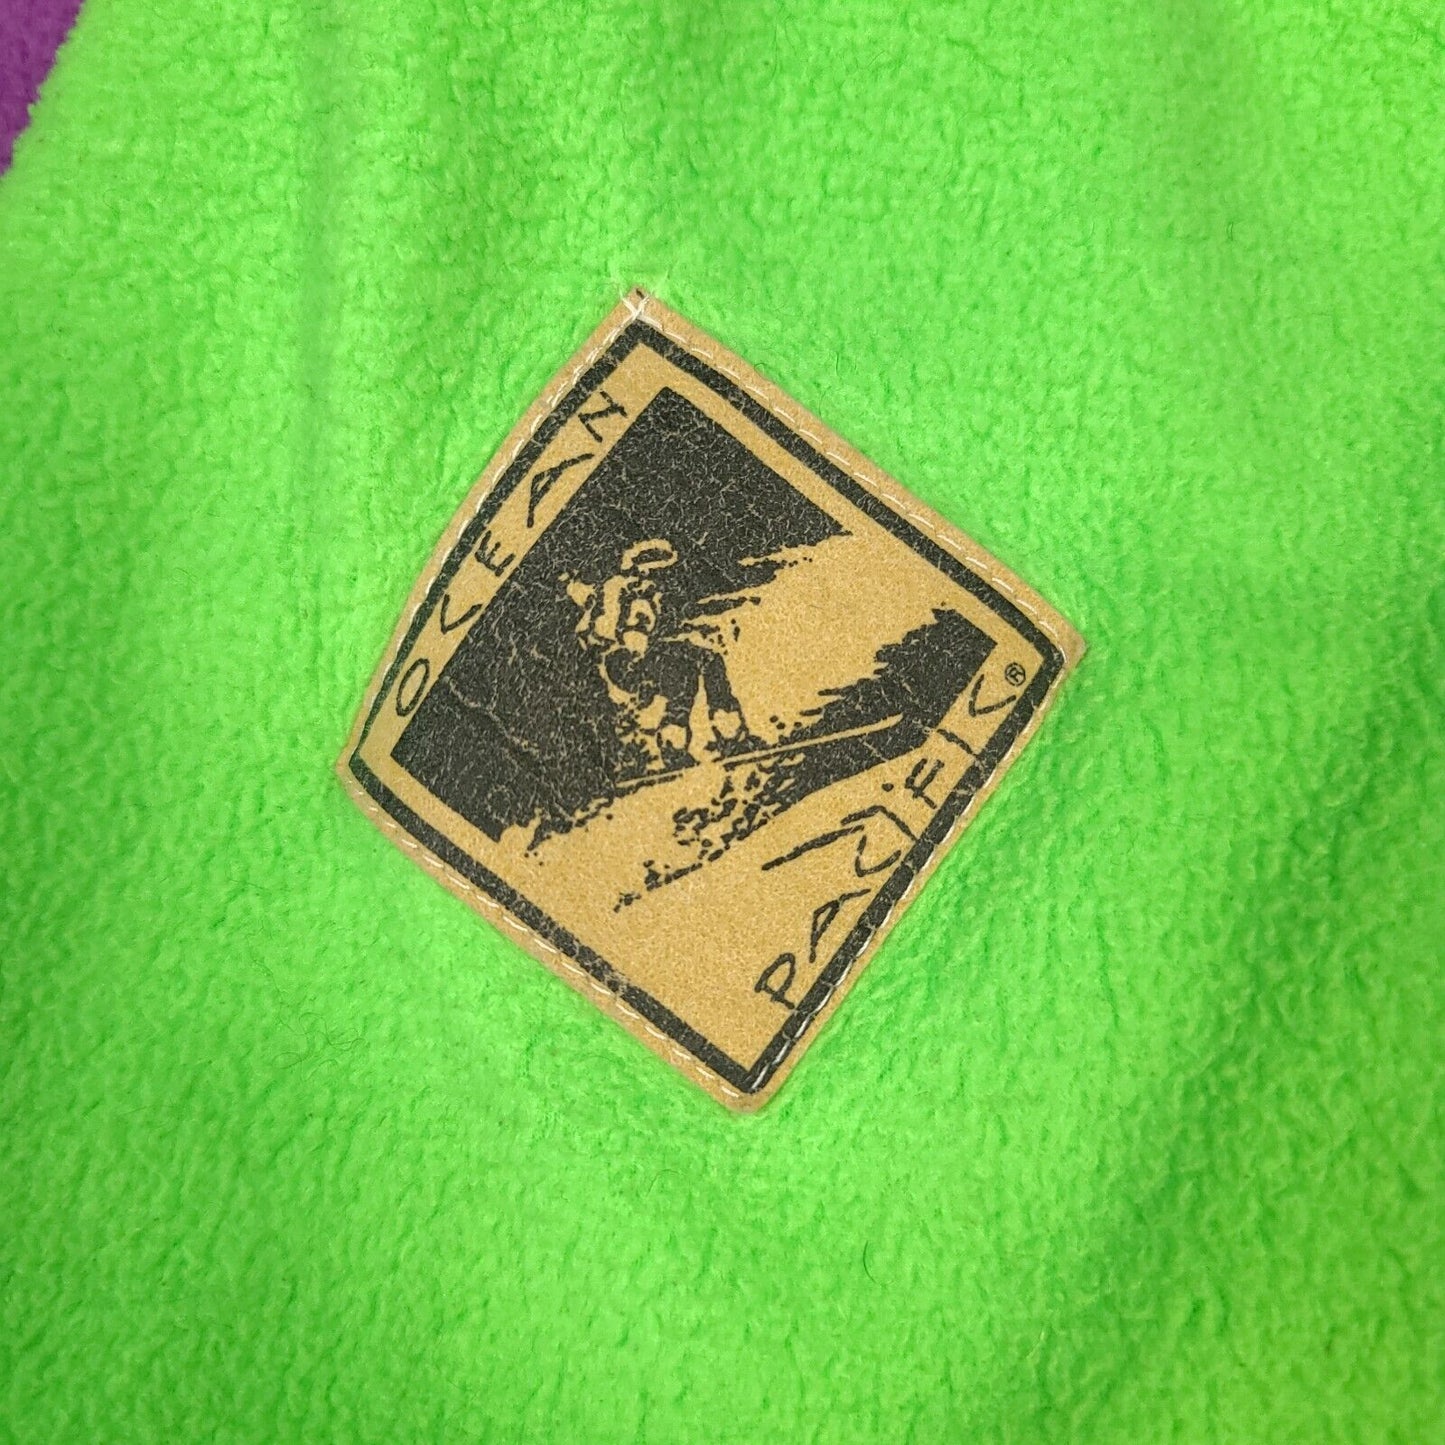 Ocean Pacific Green Purple 1/2 Zip Fleece Pullover Jacket